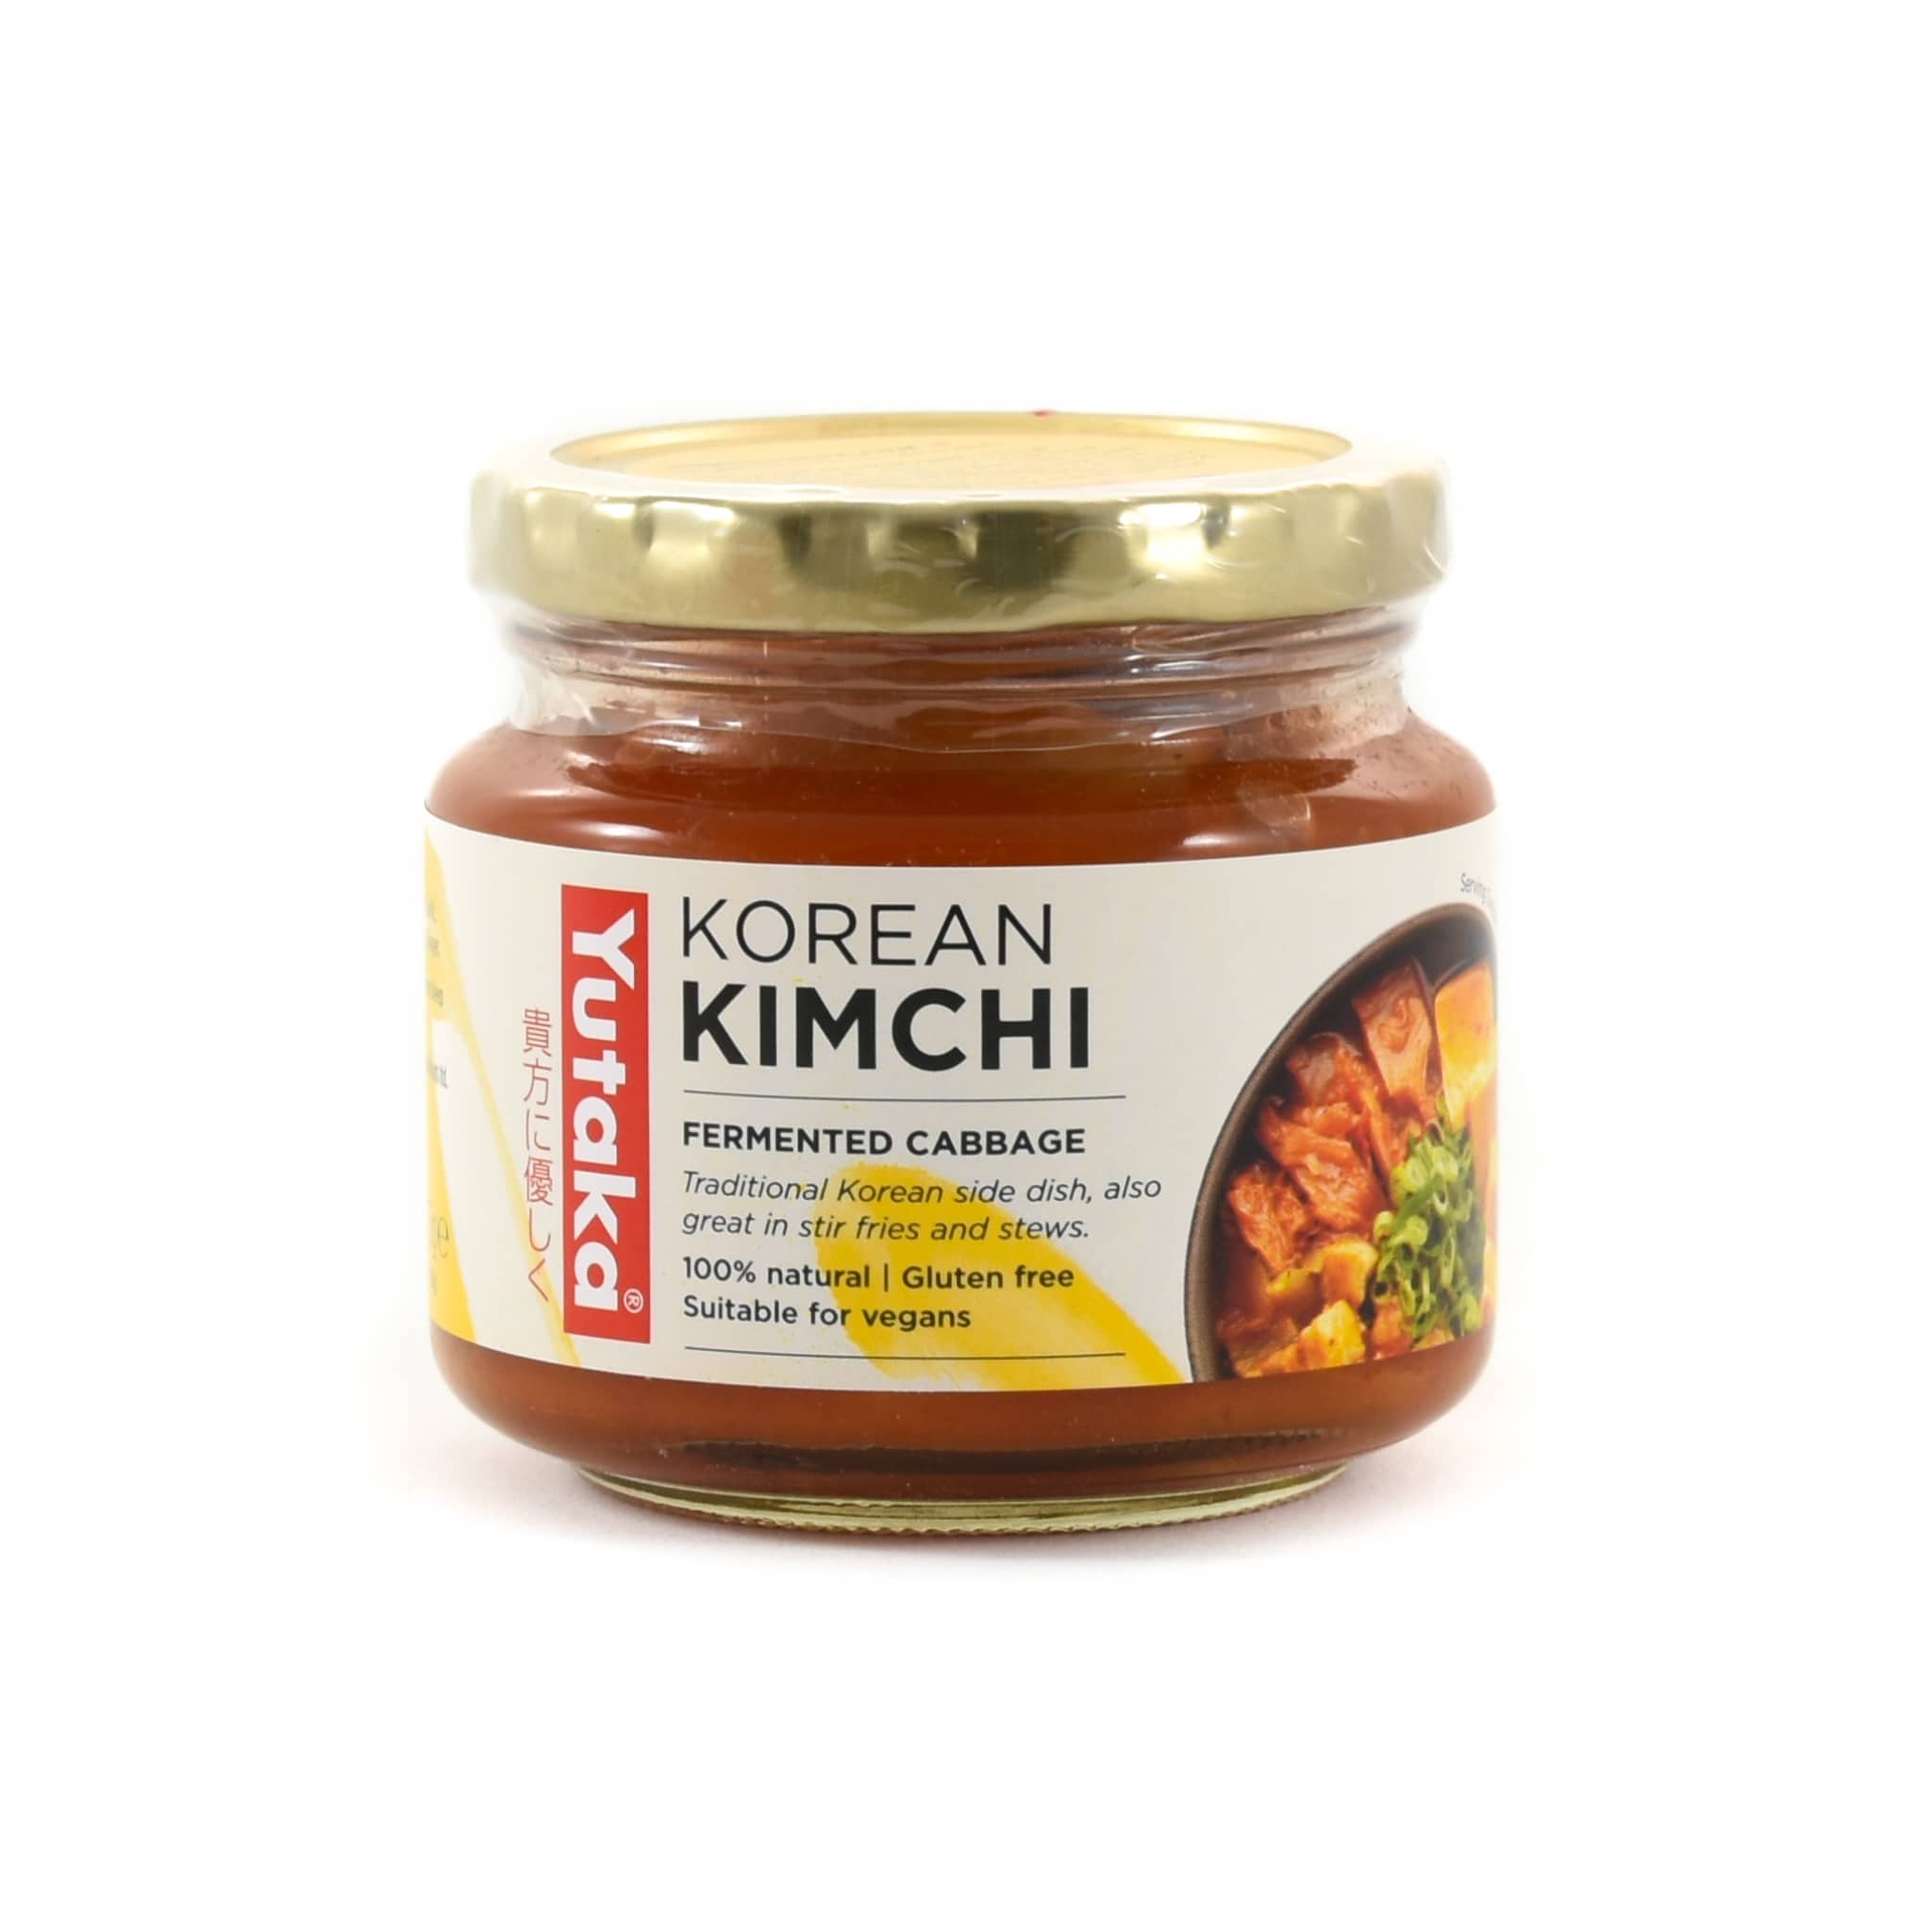 Yutaka 100% Natural Traditional Korean Kimchi 215g